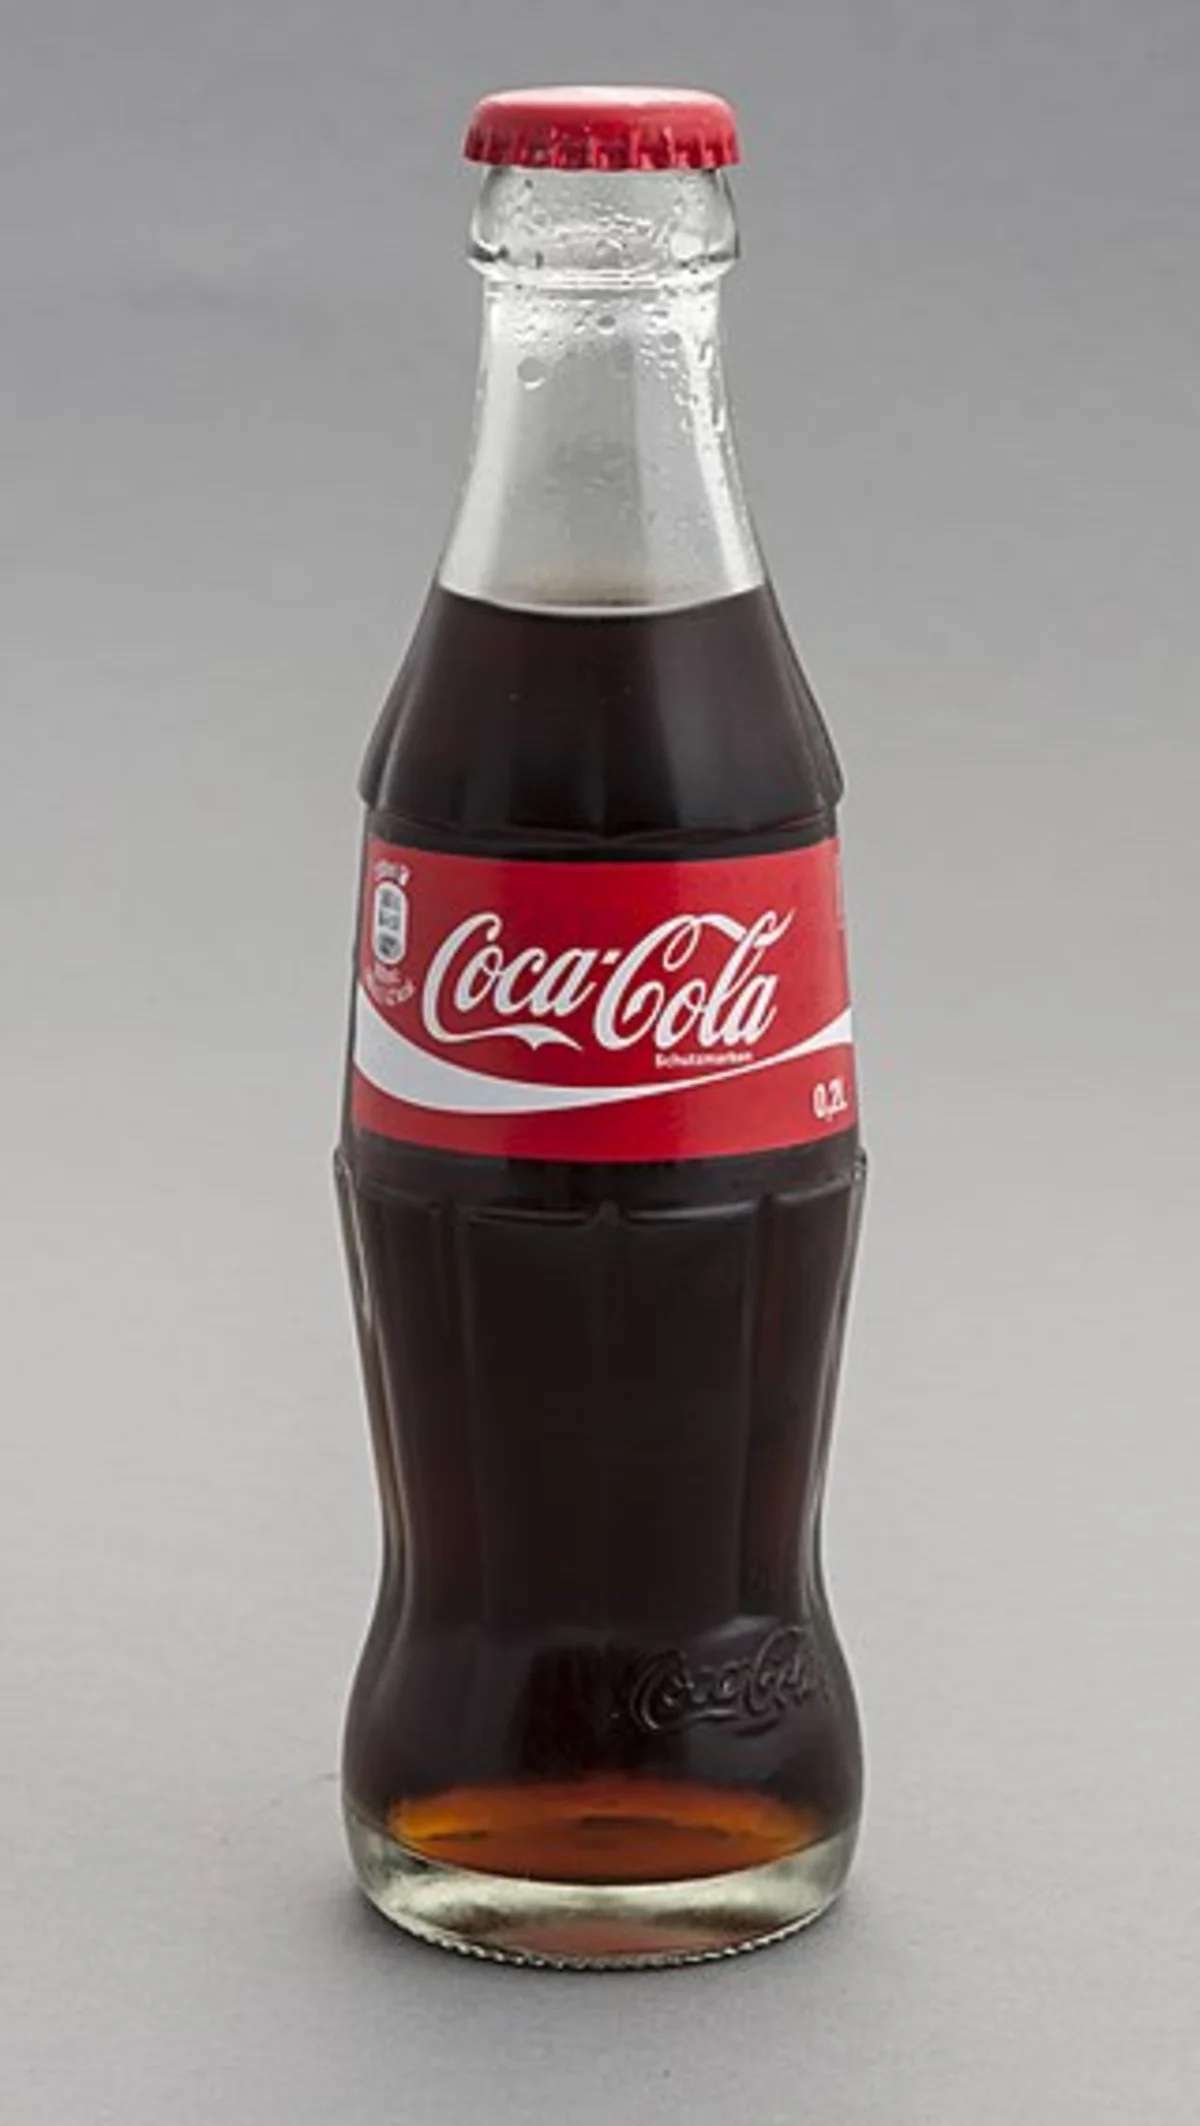 ¿Cómo identificar una Coca-Cola falsa? Tips para reconocer productos piratas y proteger tu salud